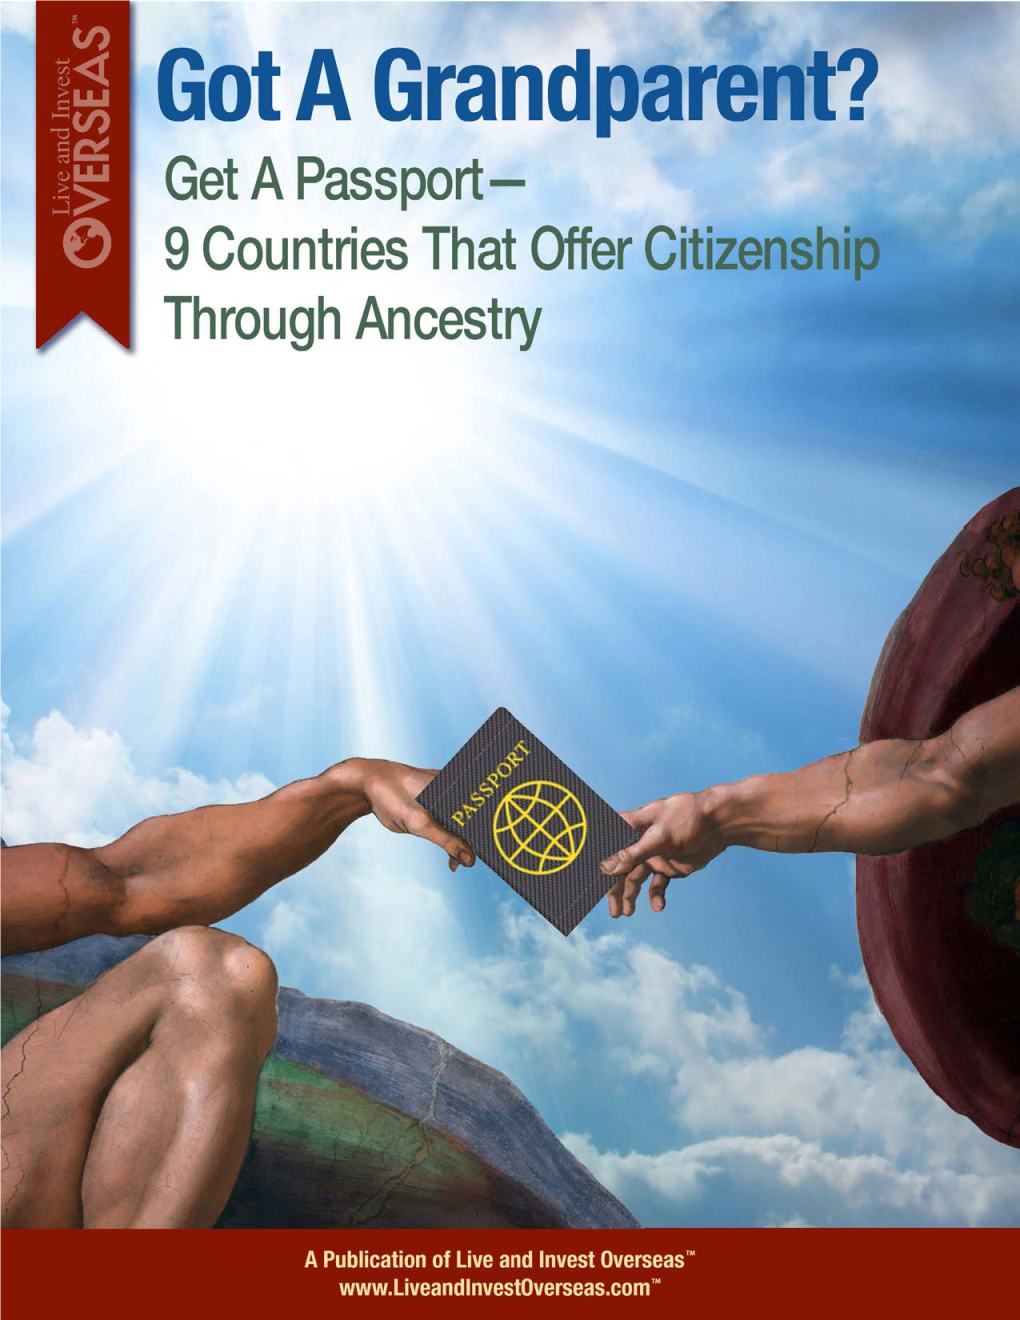 Get a Passport—9 Countries That Offer Citizenship Through Ancestry